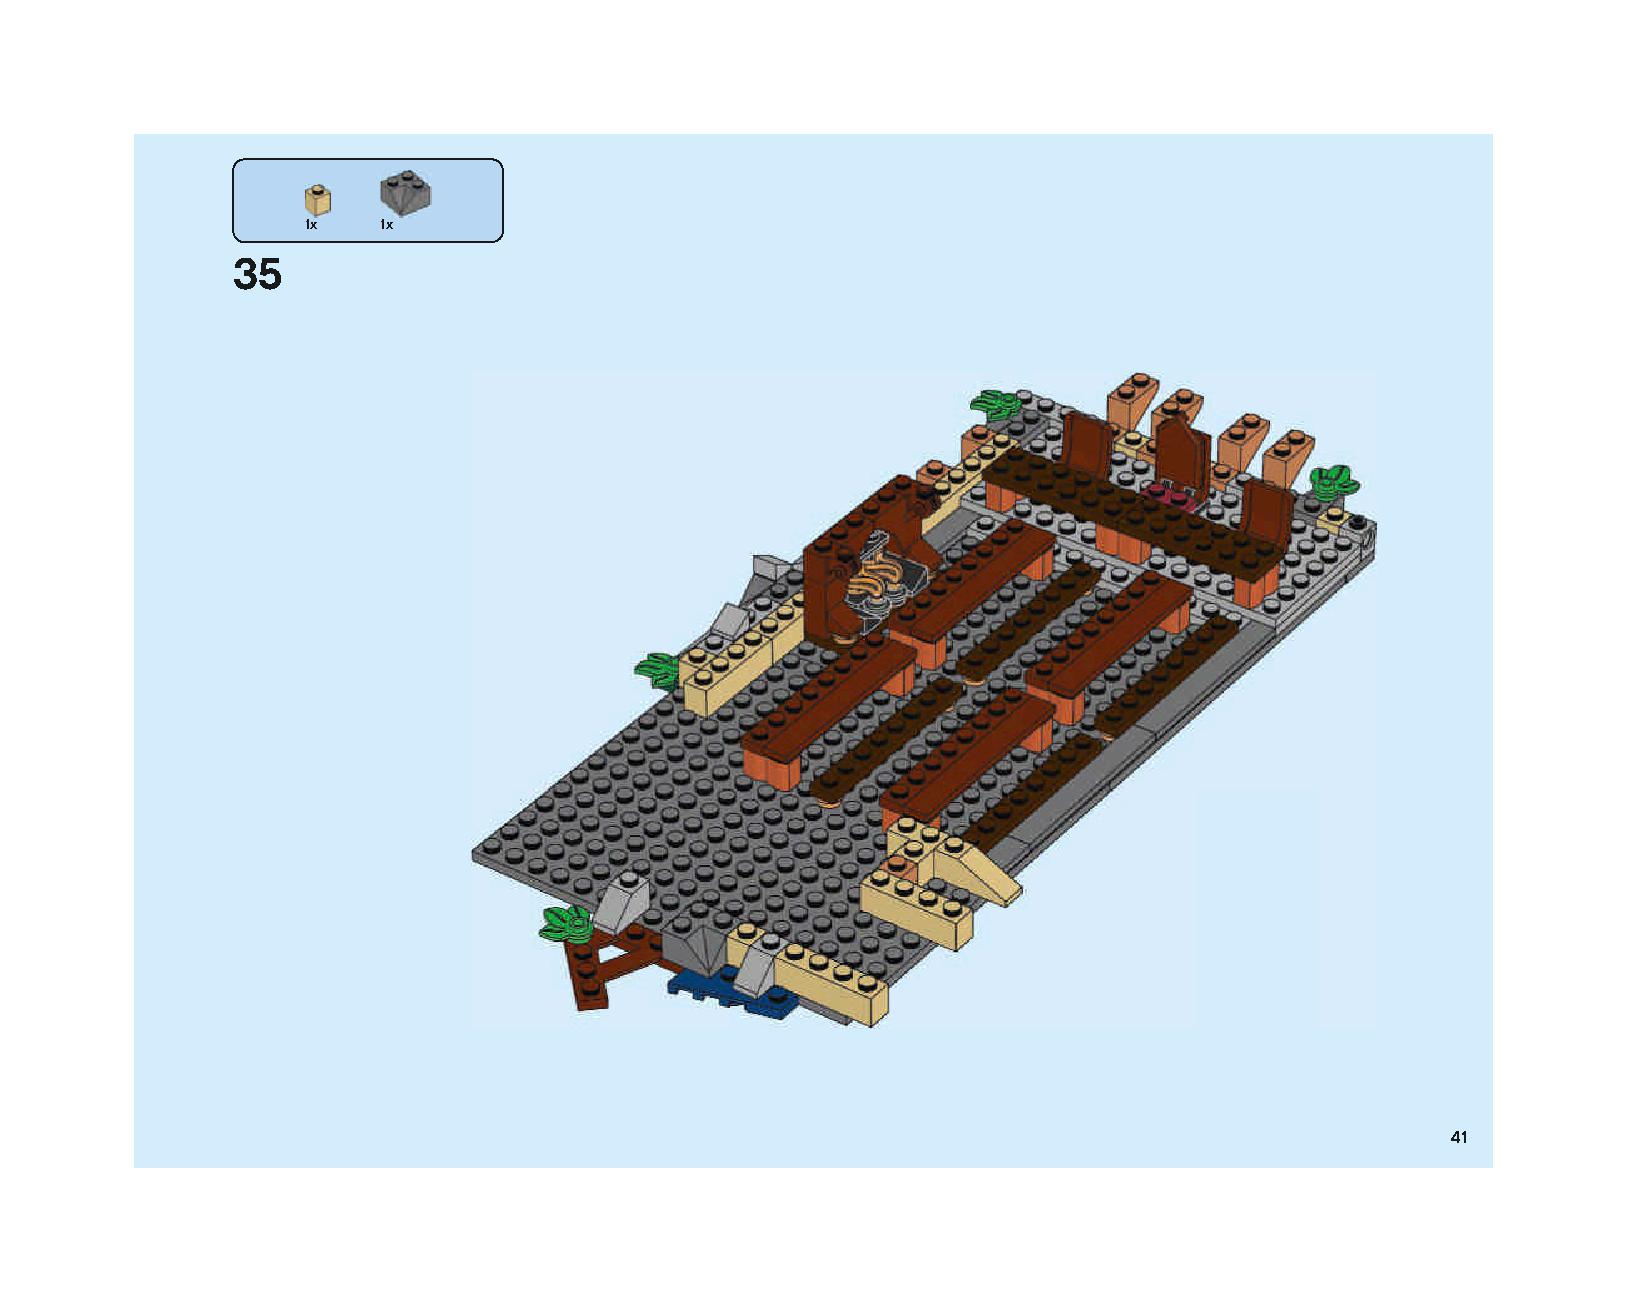 ホグワーツの大広間 75954 レゴの商品情報 レゴの説明書・組立方法 41 page